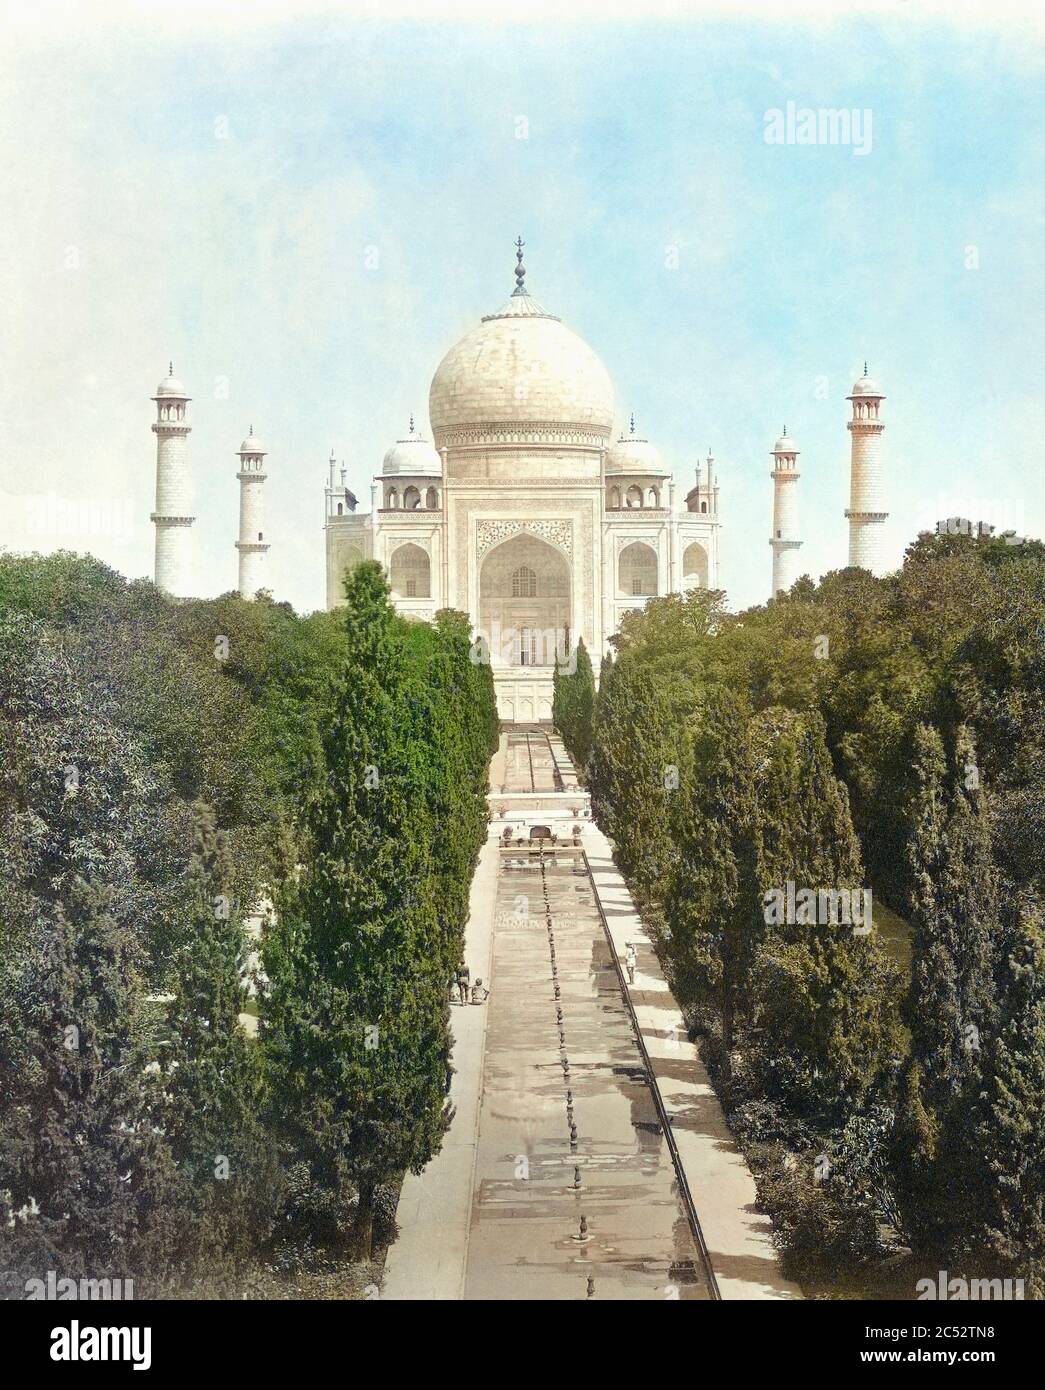 Das Taj Mahal, Agra, Uttar Pradesh, Indien in der Mitte des 19. Jahrhunderts. Detail einer Fotografie des englischen Fotografen Samuel Bourne, 1834 - 1912. Spätere Farbgebung. Stockfoto